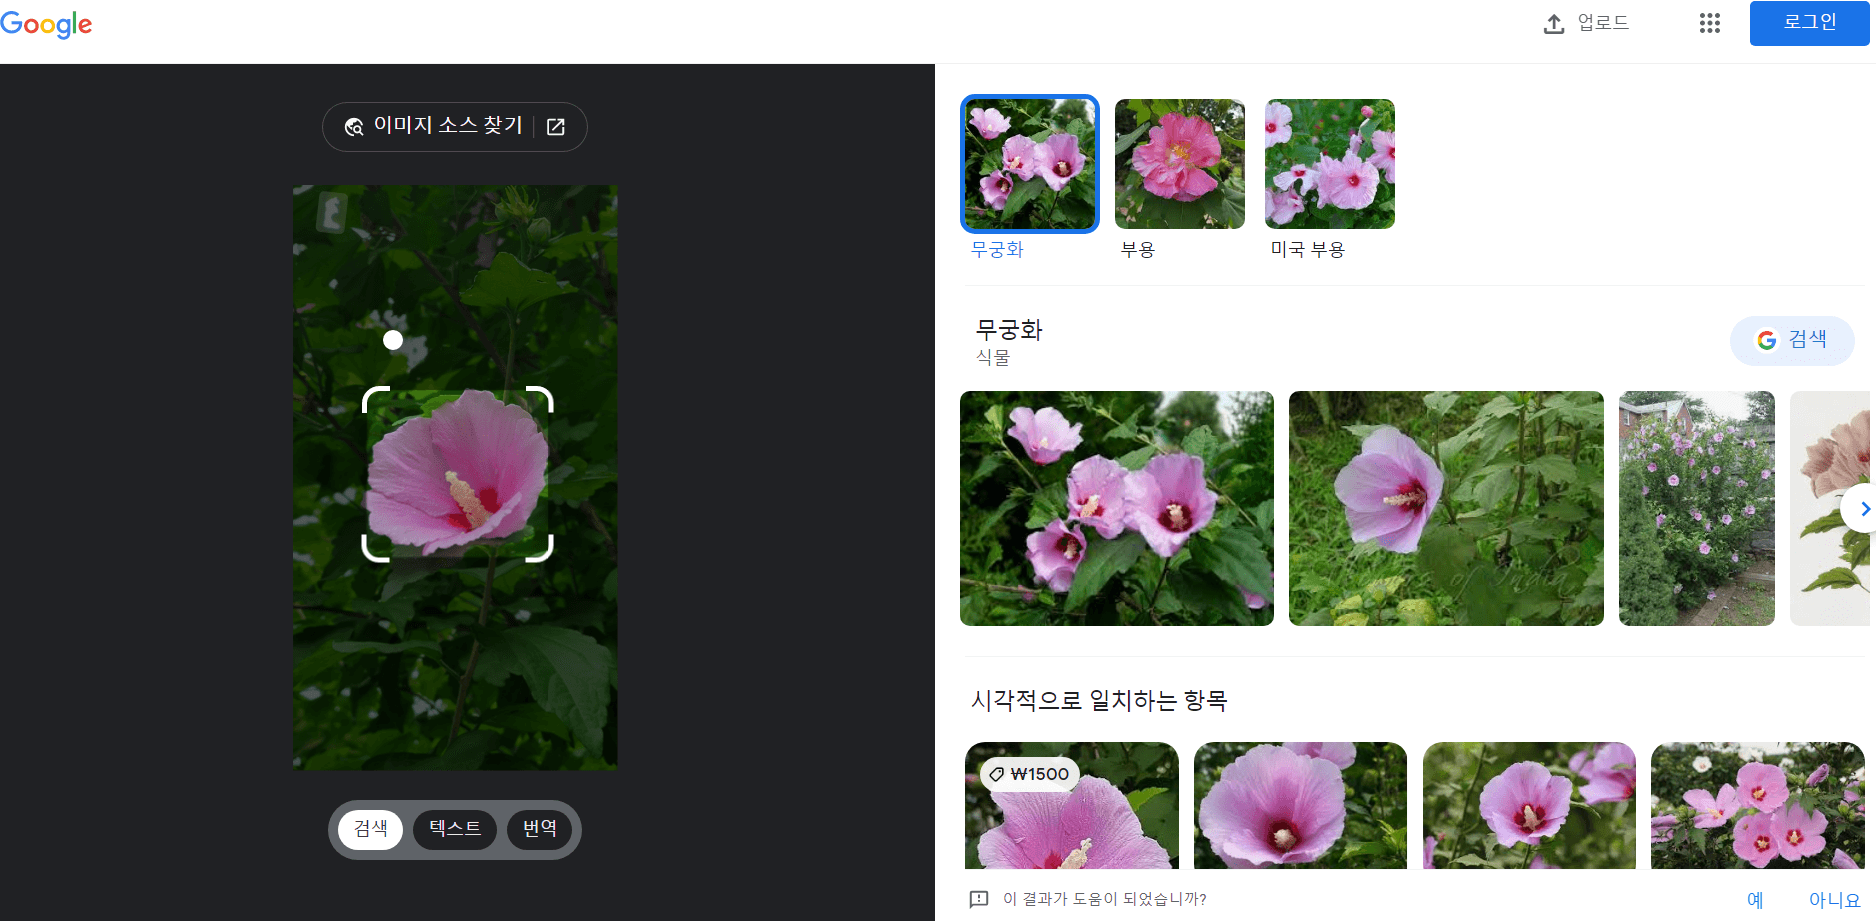 구글 이미지 검색 꽃 이름 찾기 결과